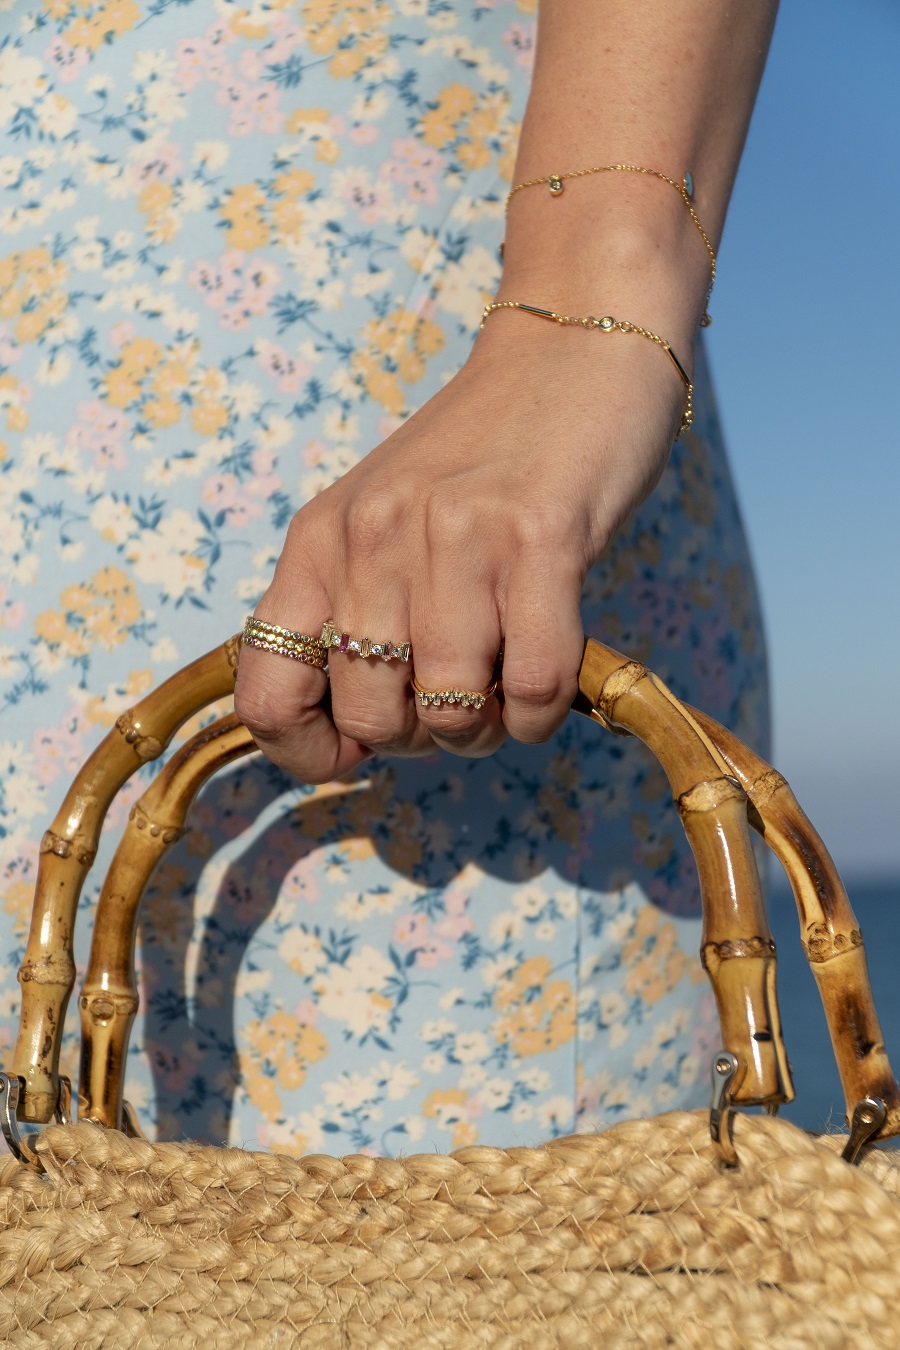 buenaletra joyas oro plata online tienda verano pulseras anillos collares pendientes personalizados sueltos regalos 